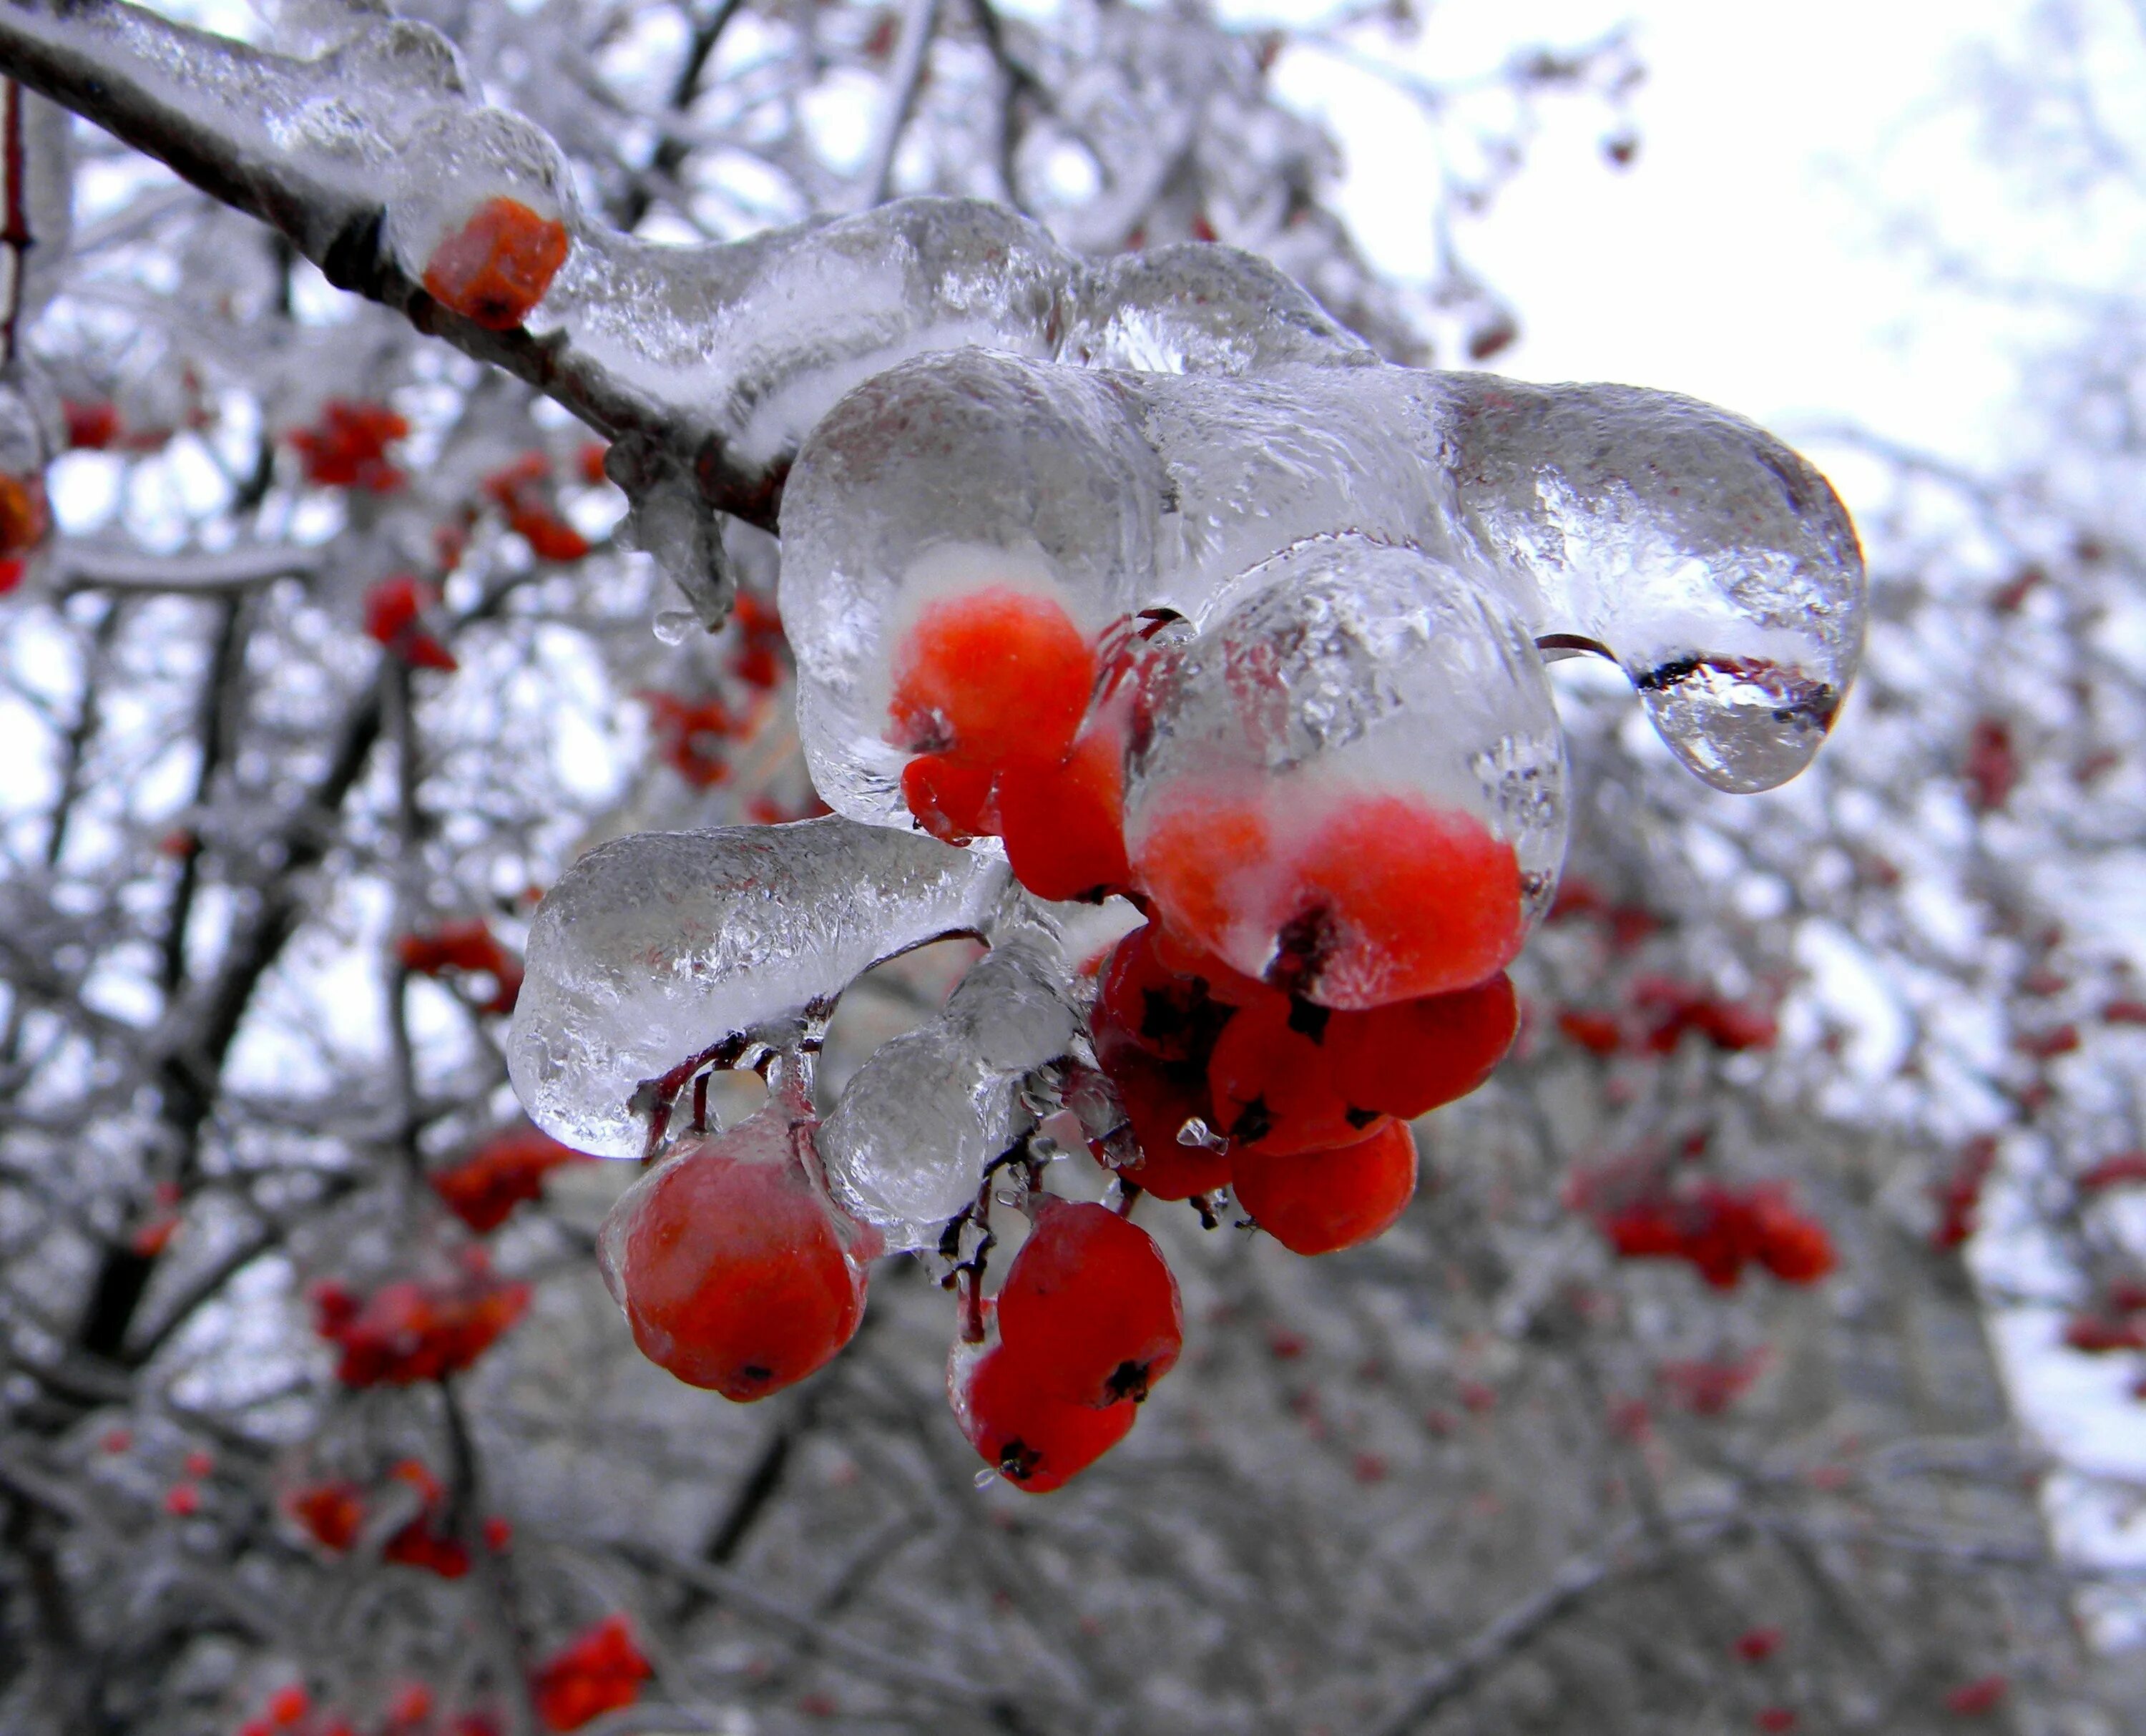 Оттепели все чаще но пока ночи морозны. Рябина в снегу. Ледяные ягоды. Рябина во льду. Рябина в ледяном Дожде.